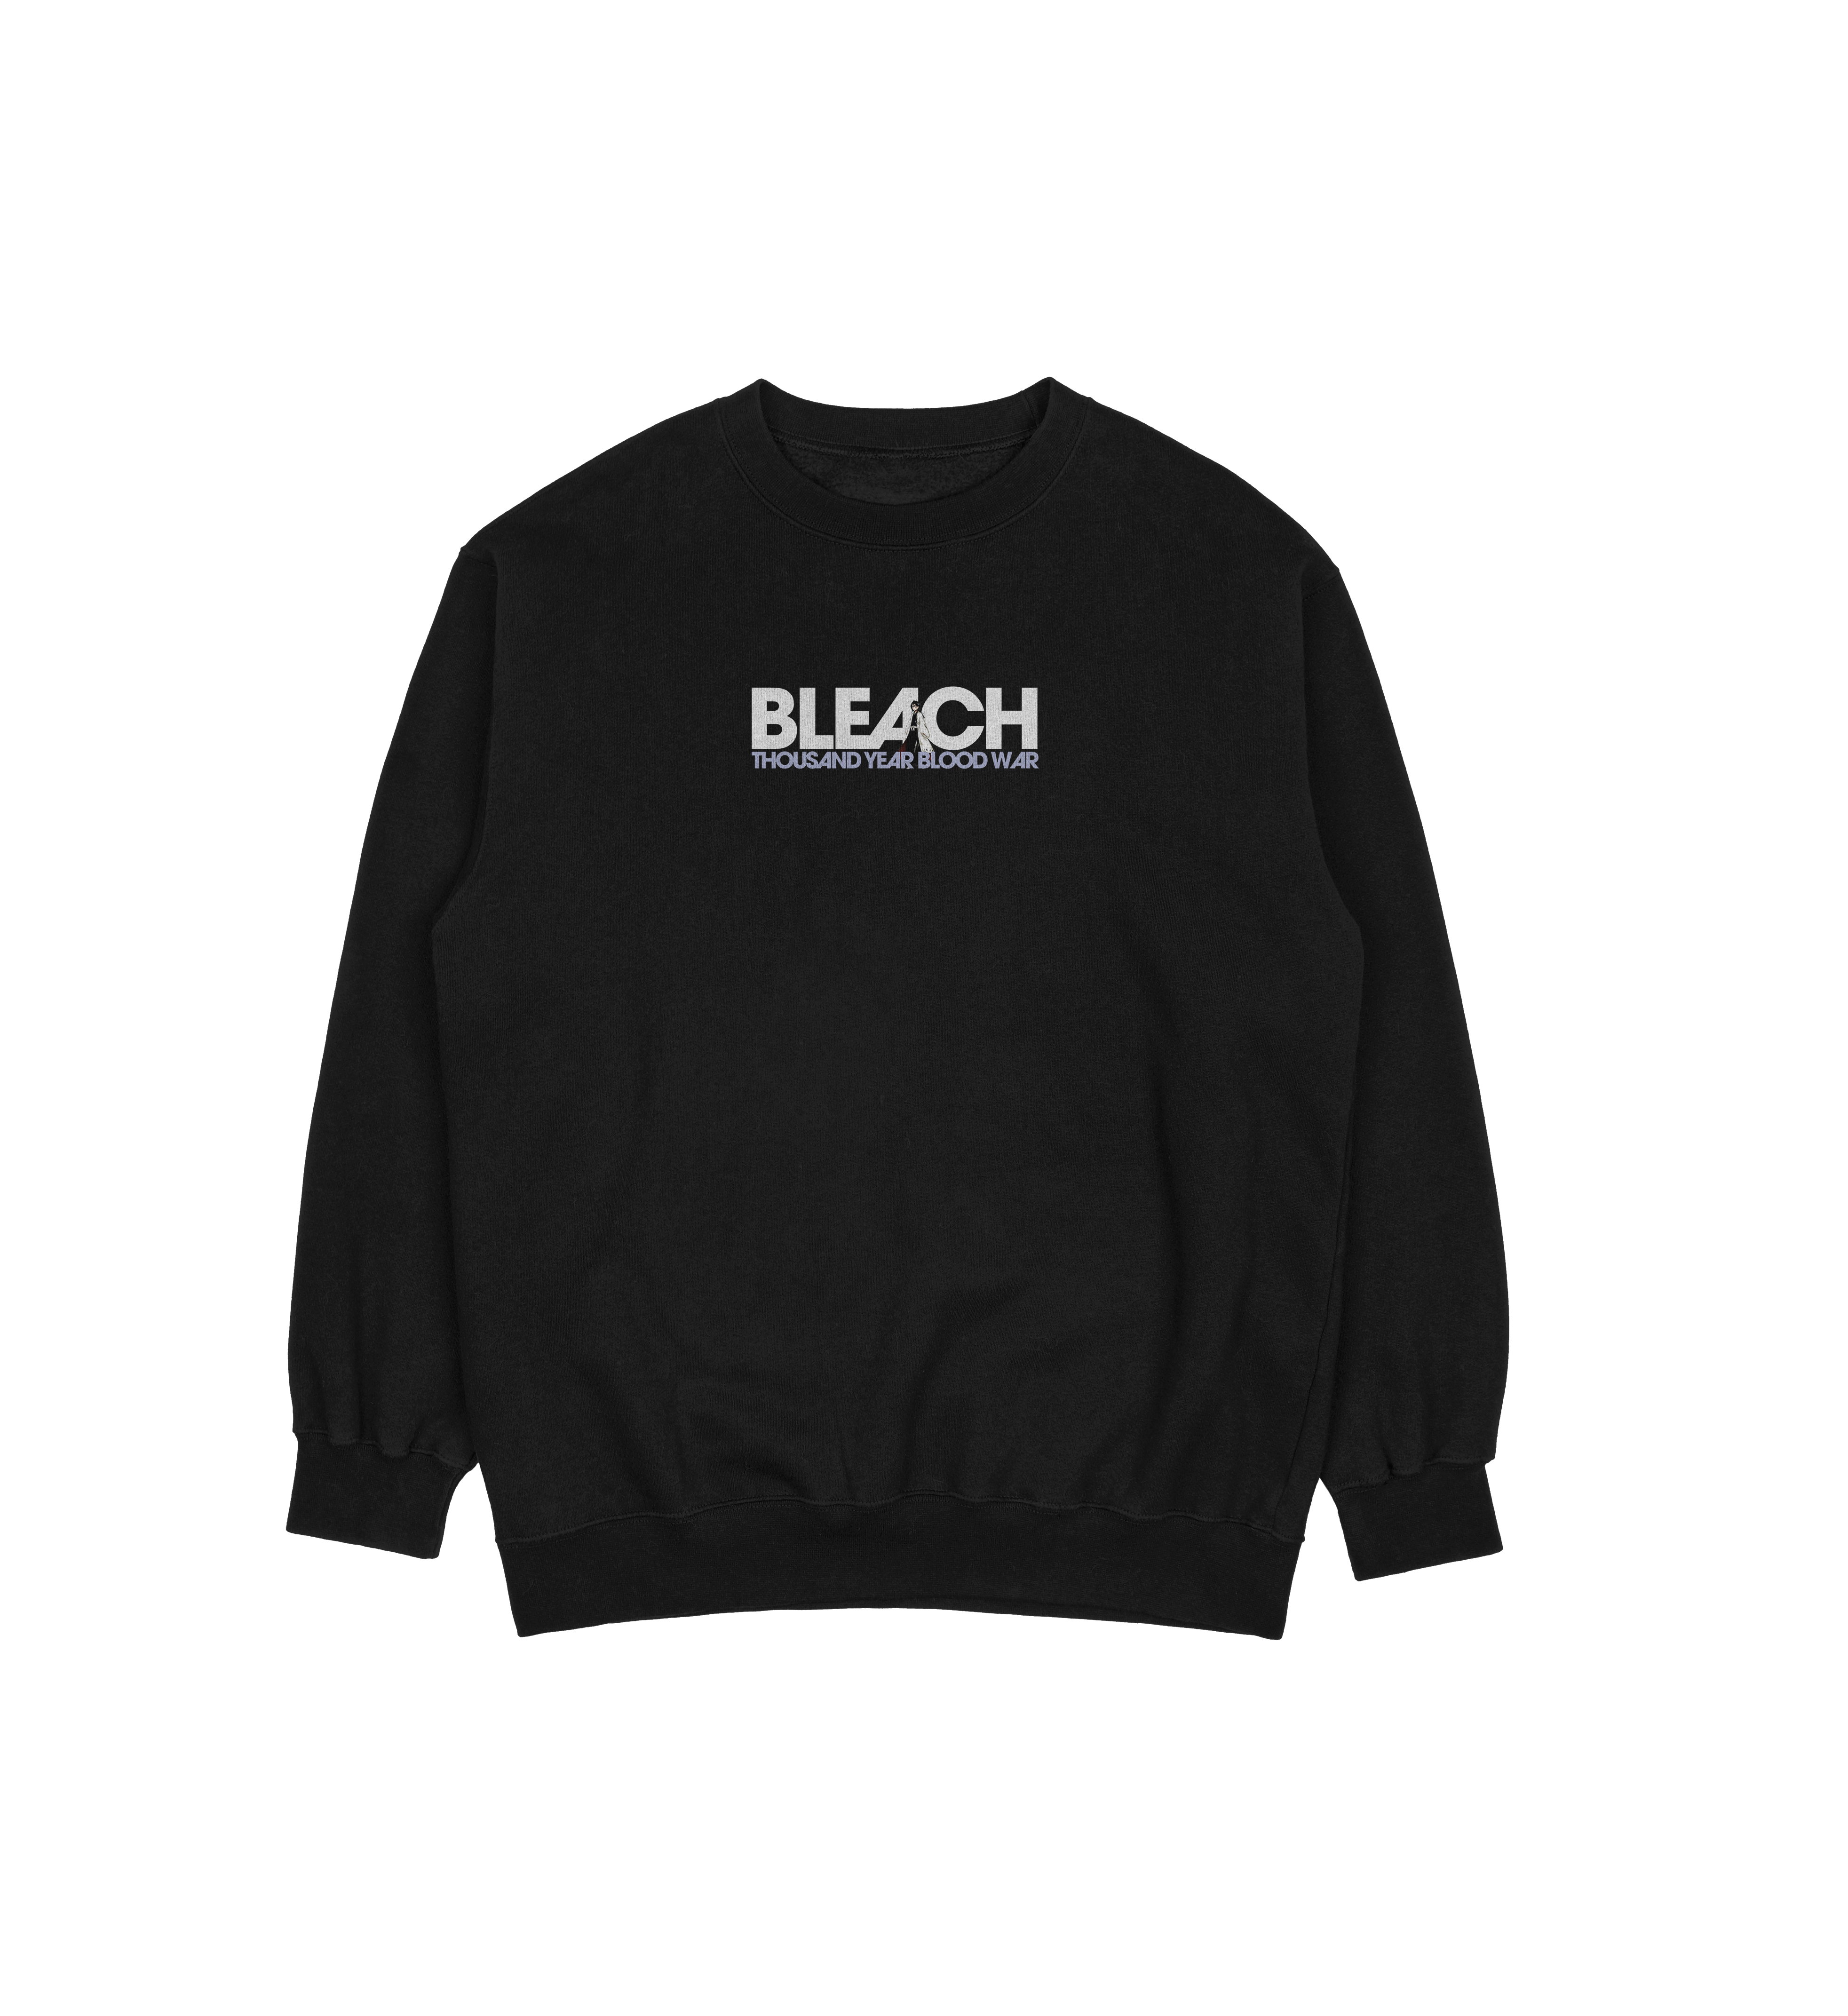 Rukia Kuchiki Bleach | Sweatshirt TYBW